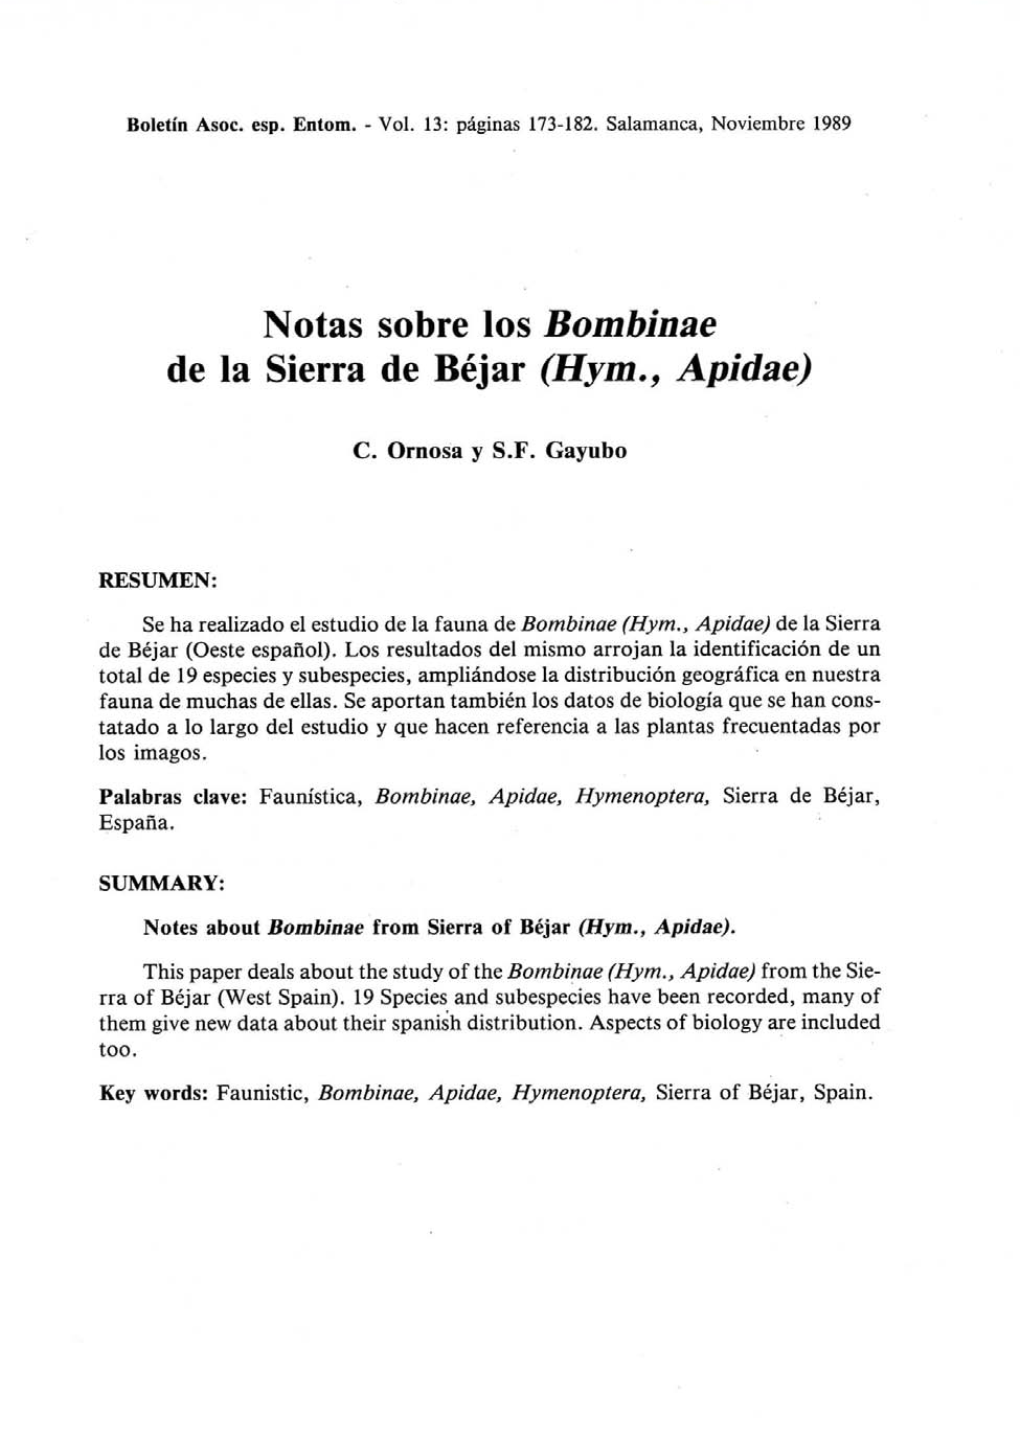 Notas Sobre Los Bombinae De La Sierra De Béjar (Hym., Apidae)